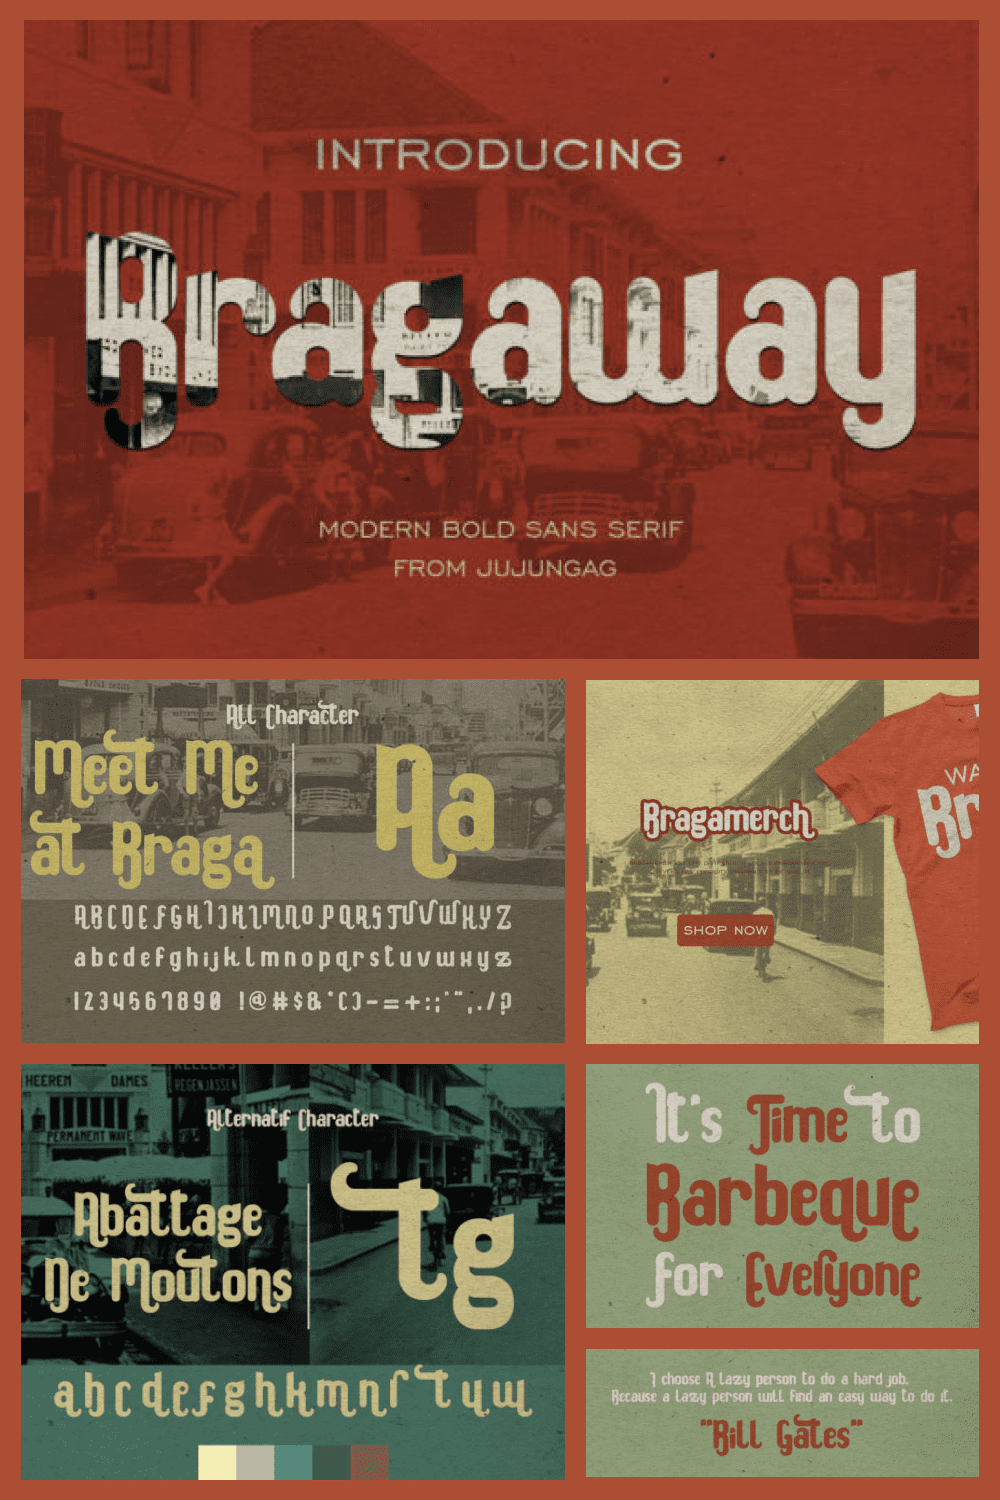 Bragaway Modern Font - MasterBundles - Pinterest Collage Image.